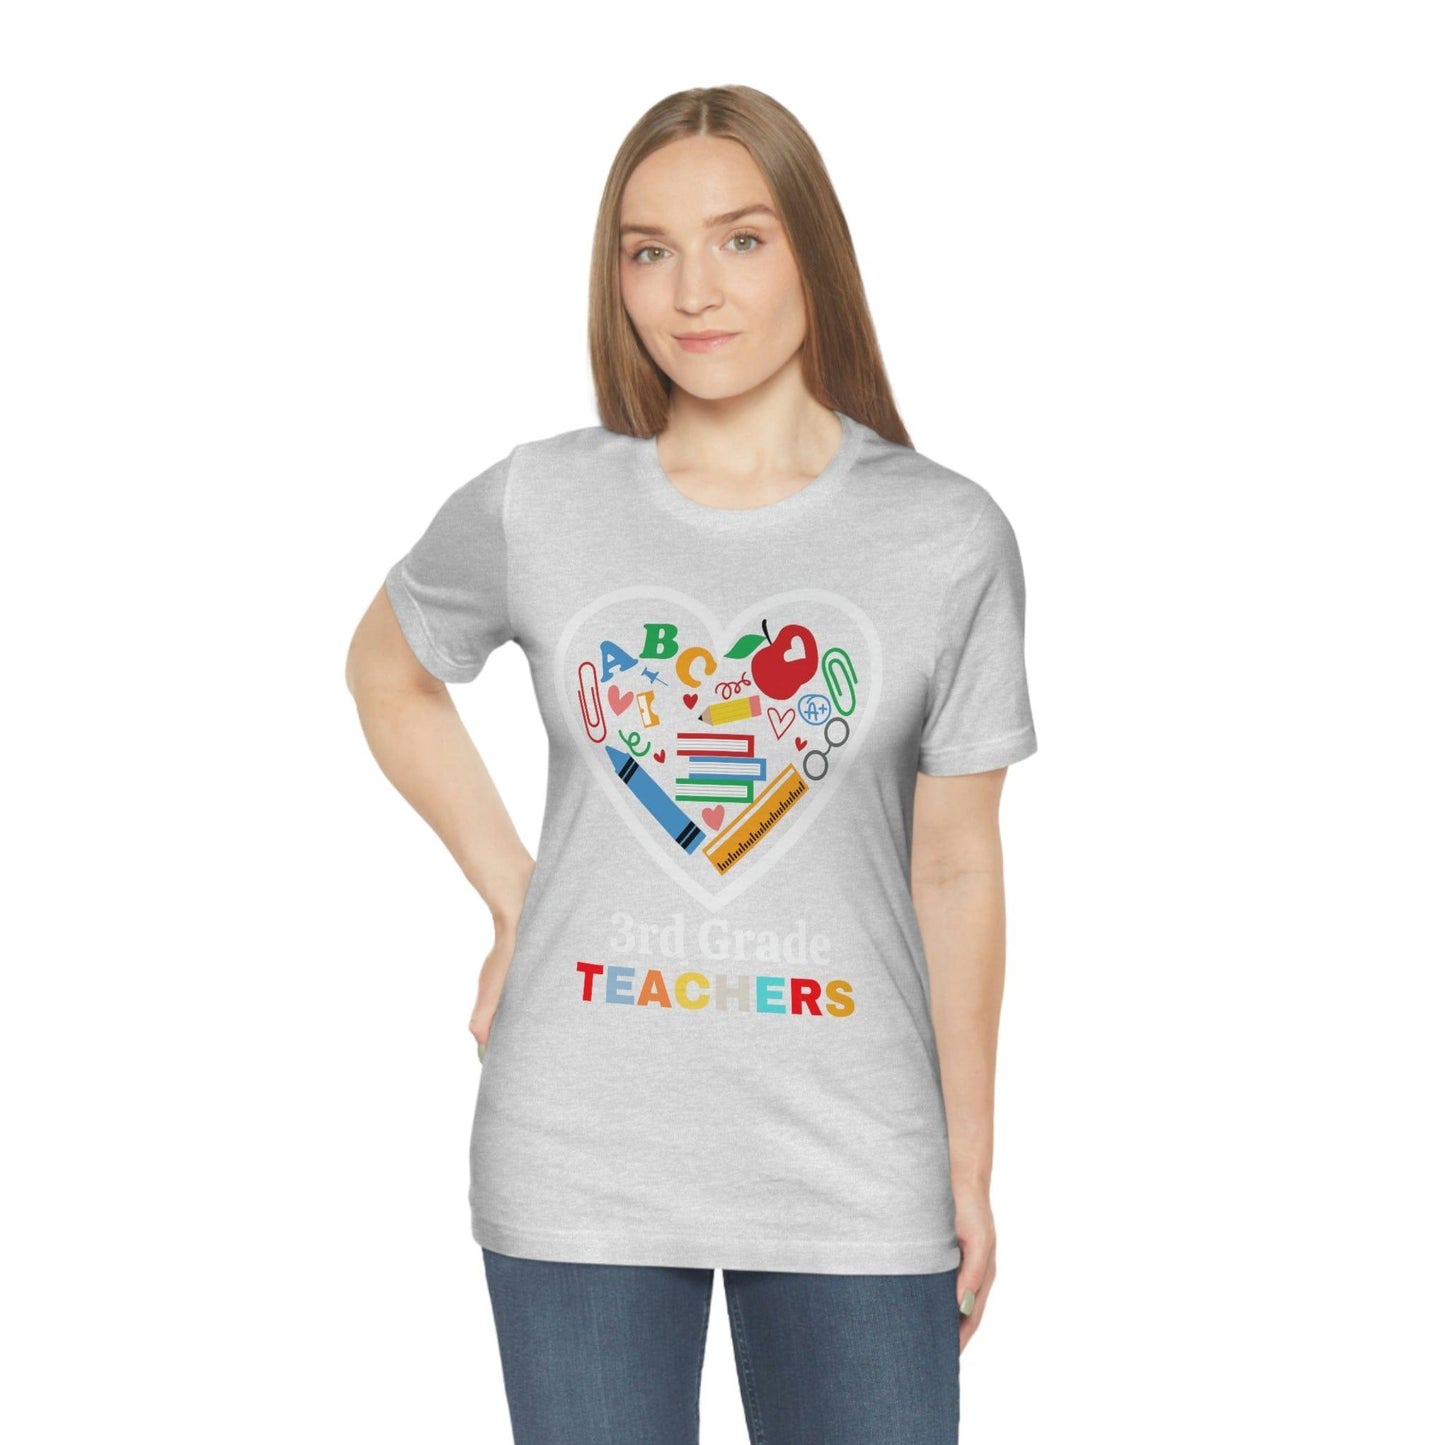 Love 3rd Grade Teacher Shirt - Teacher Appreciation Shirt - Gift for Teachers - 3rd Grade shirt - Giftsmojo